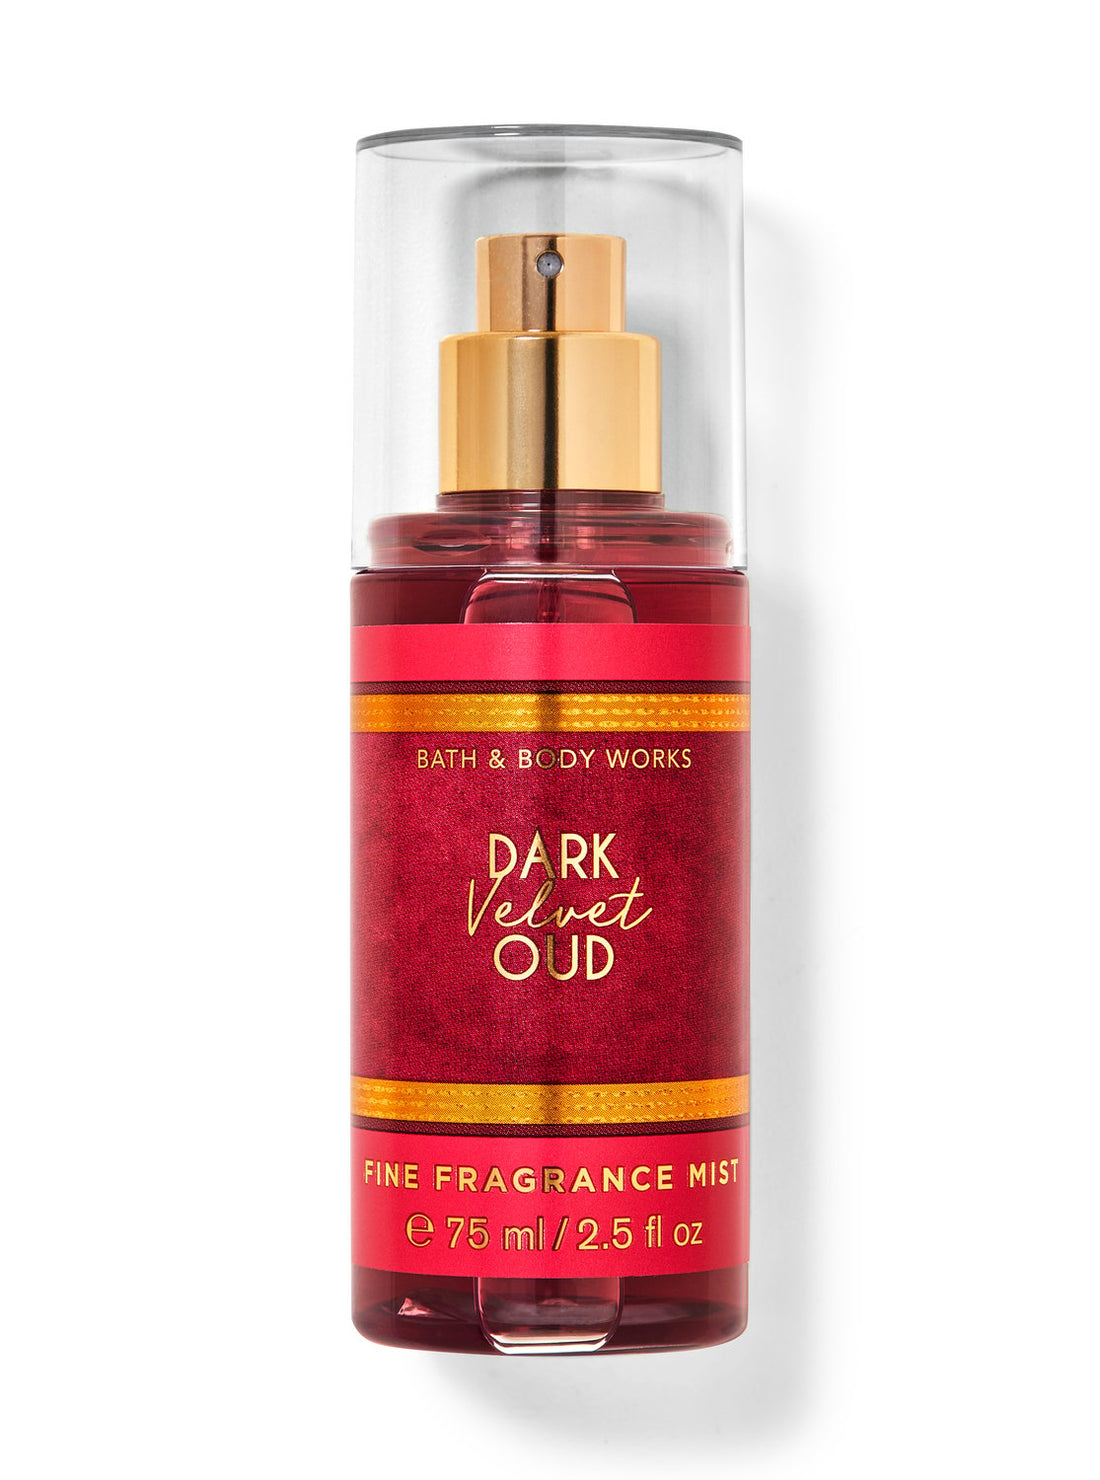 Dark Velvet Oud Travel Size Fine Fragrance Mist from Bath & Body Works